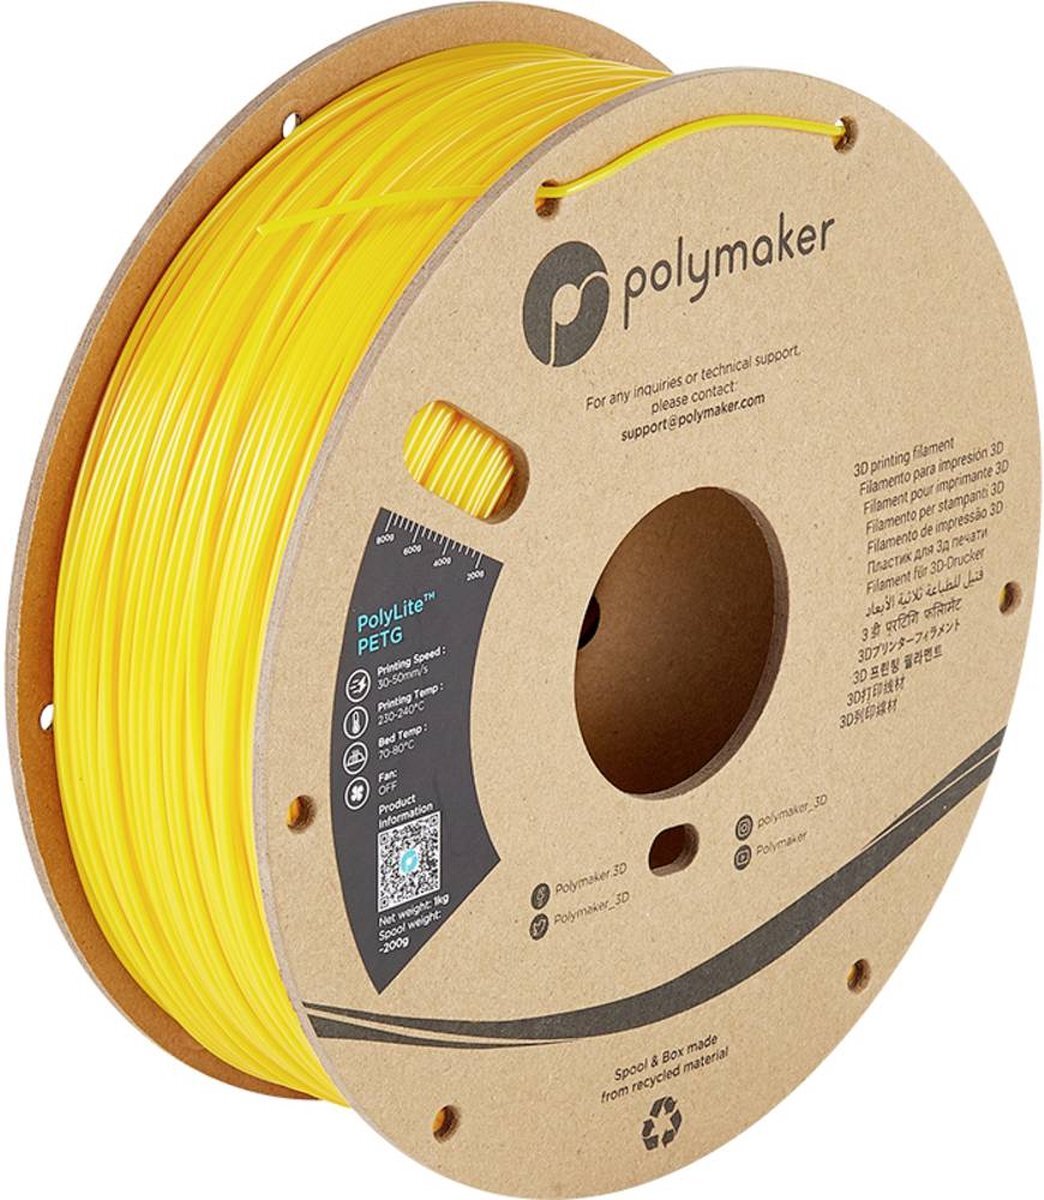 POLYMAKER PB01006 PolyLite Filament PETG hitzebeständig, hohe Zugfestigkeit 1.75mm 1000g yellow1 pc(s)